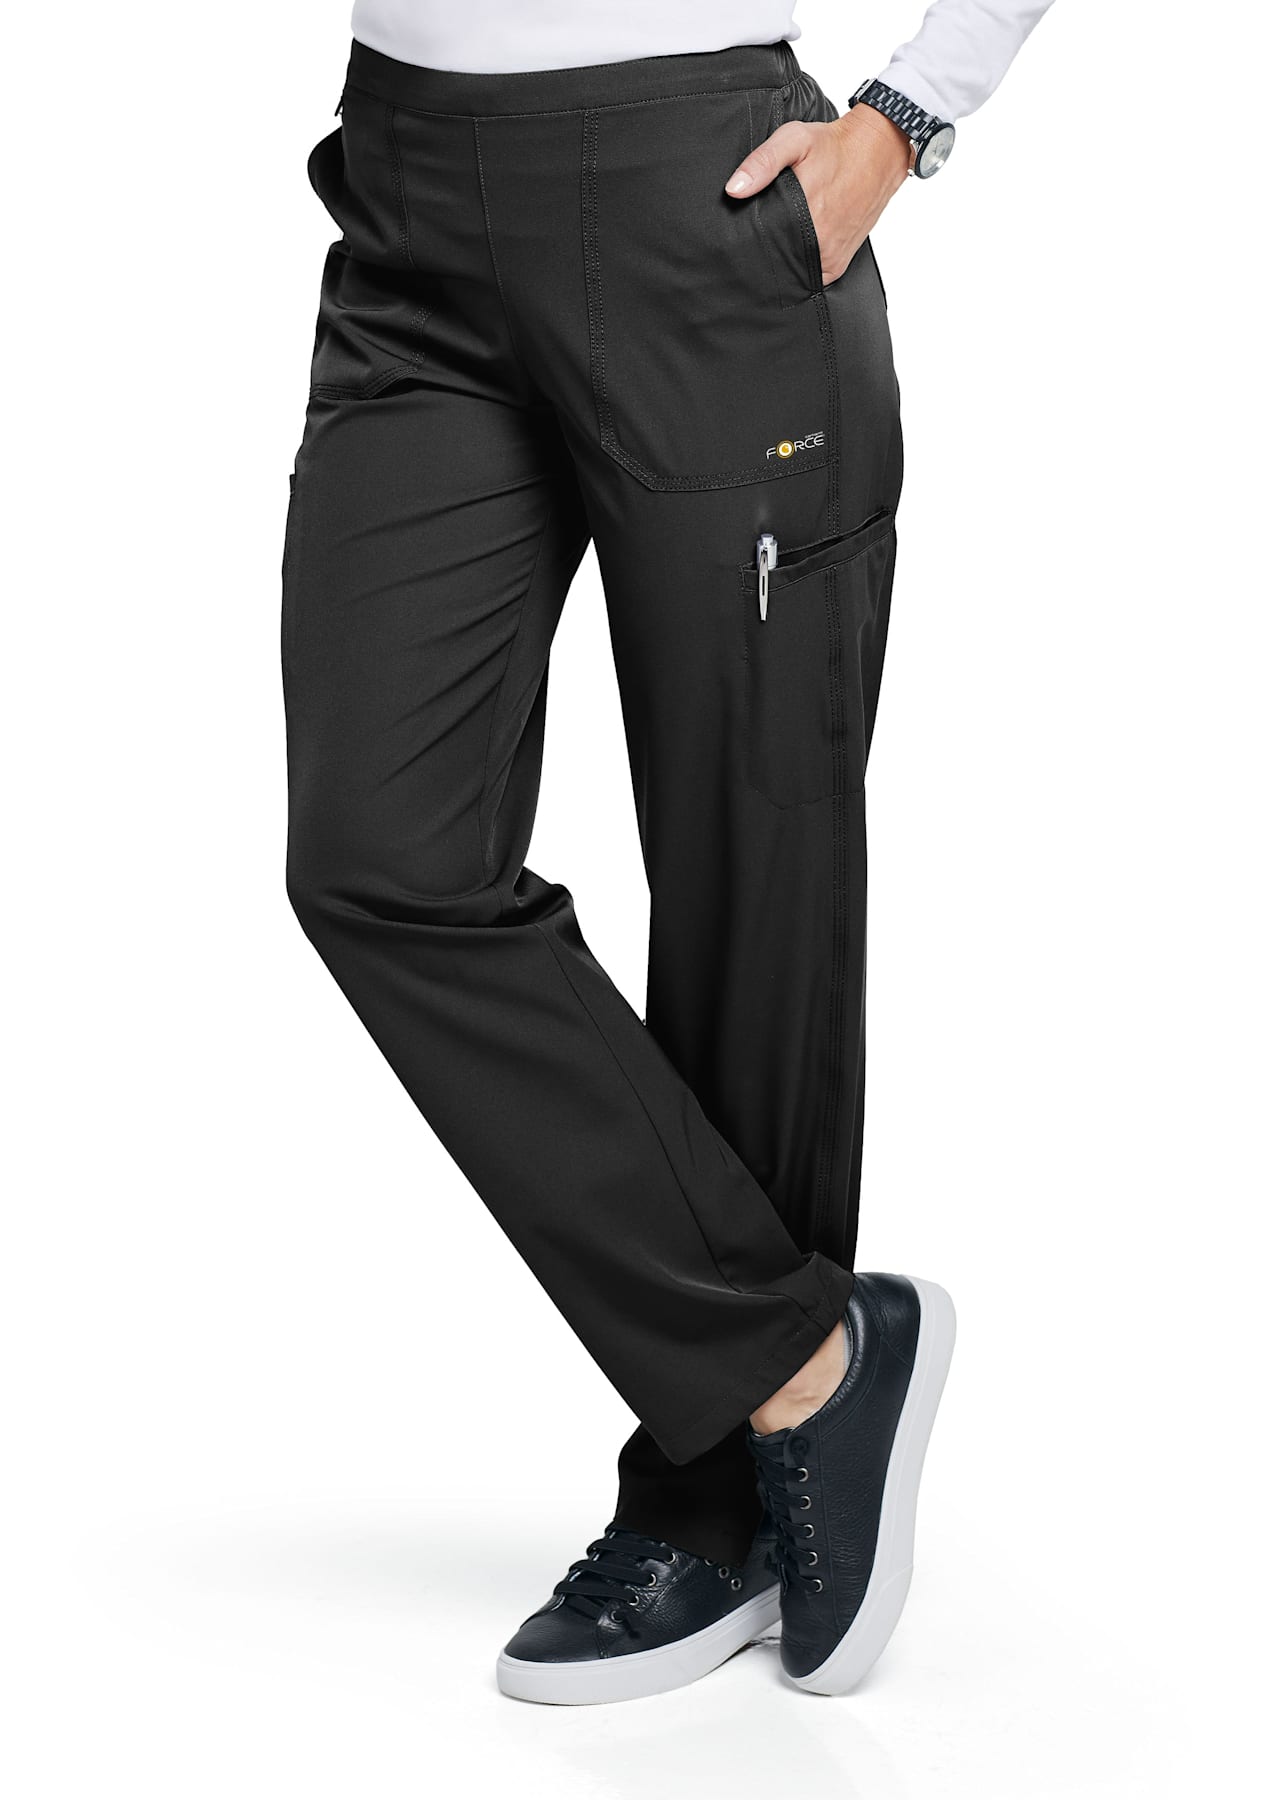 Women's Flex Scrub Pants - Black